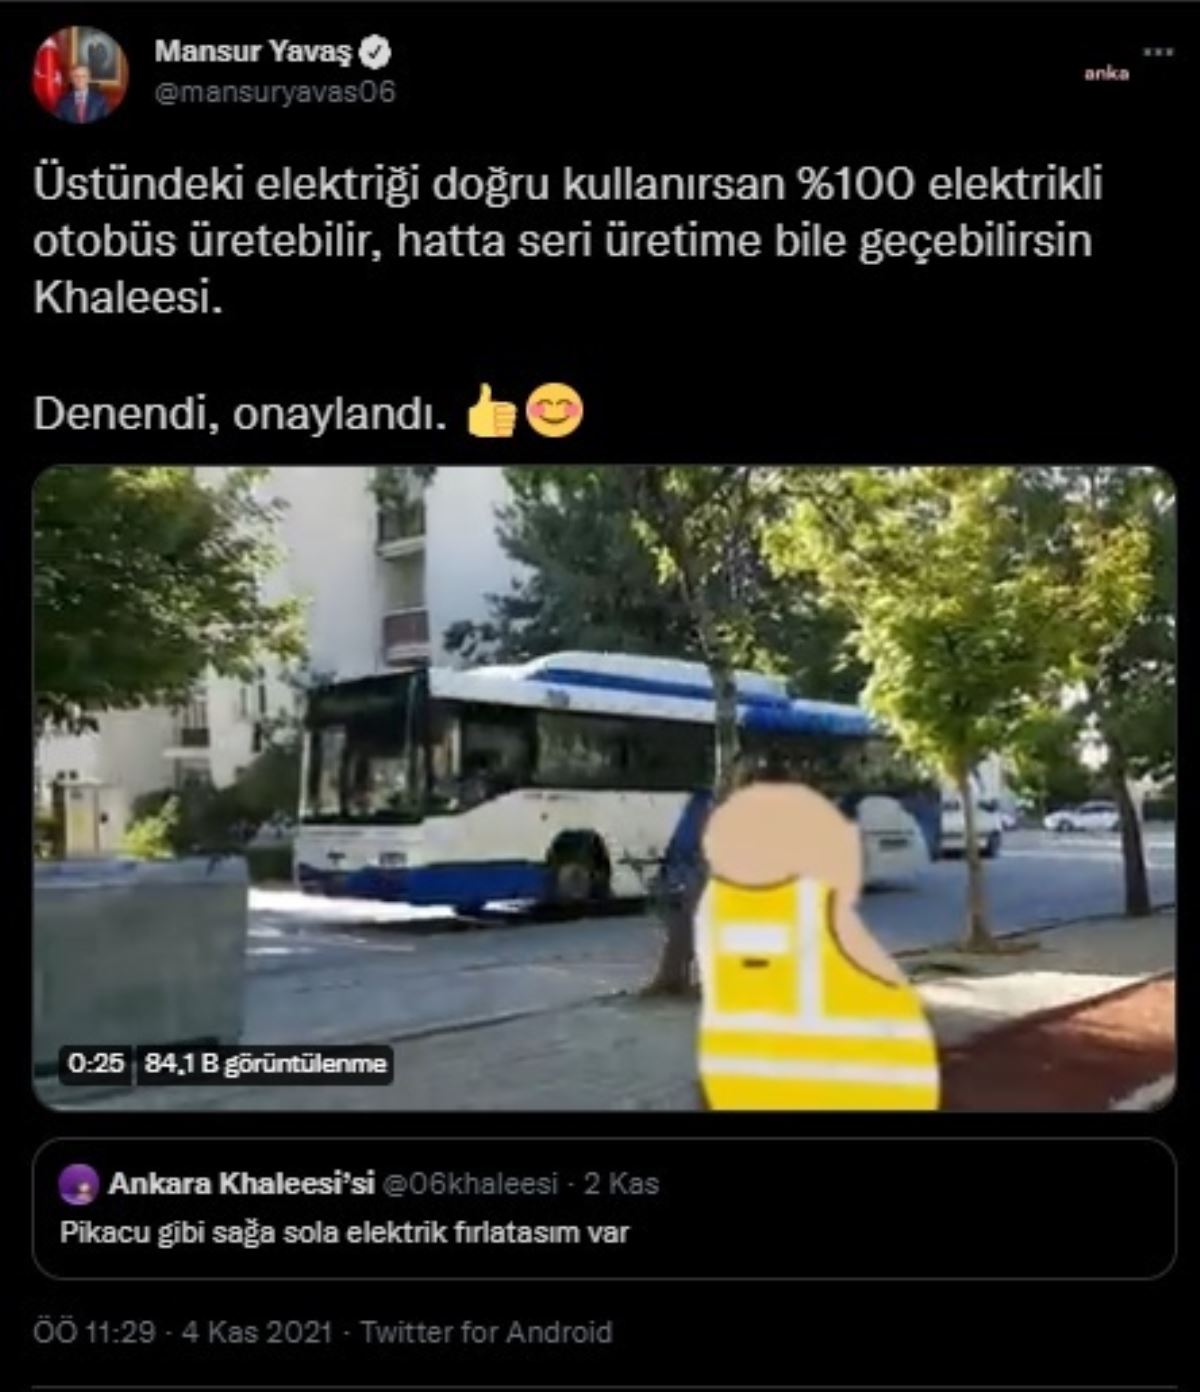 Mansur Yavaş'tan "Pikachu üzere sağa sola elektrik fırlatasım var" paylaşımına: Üstündeki elektriği gerçek kullanırsan yüzde 100 elektrikli otobüs üretebilirsin